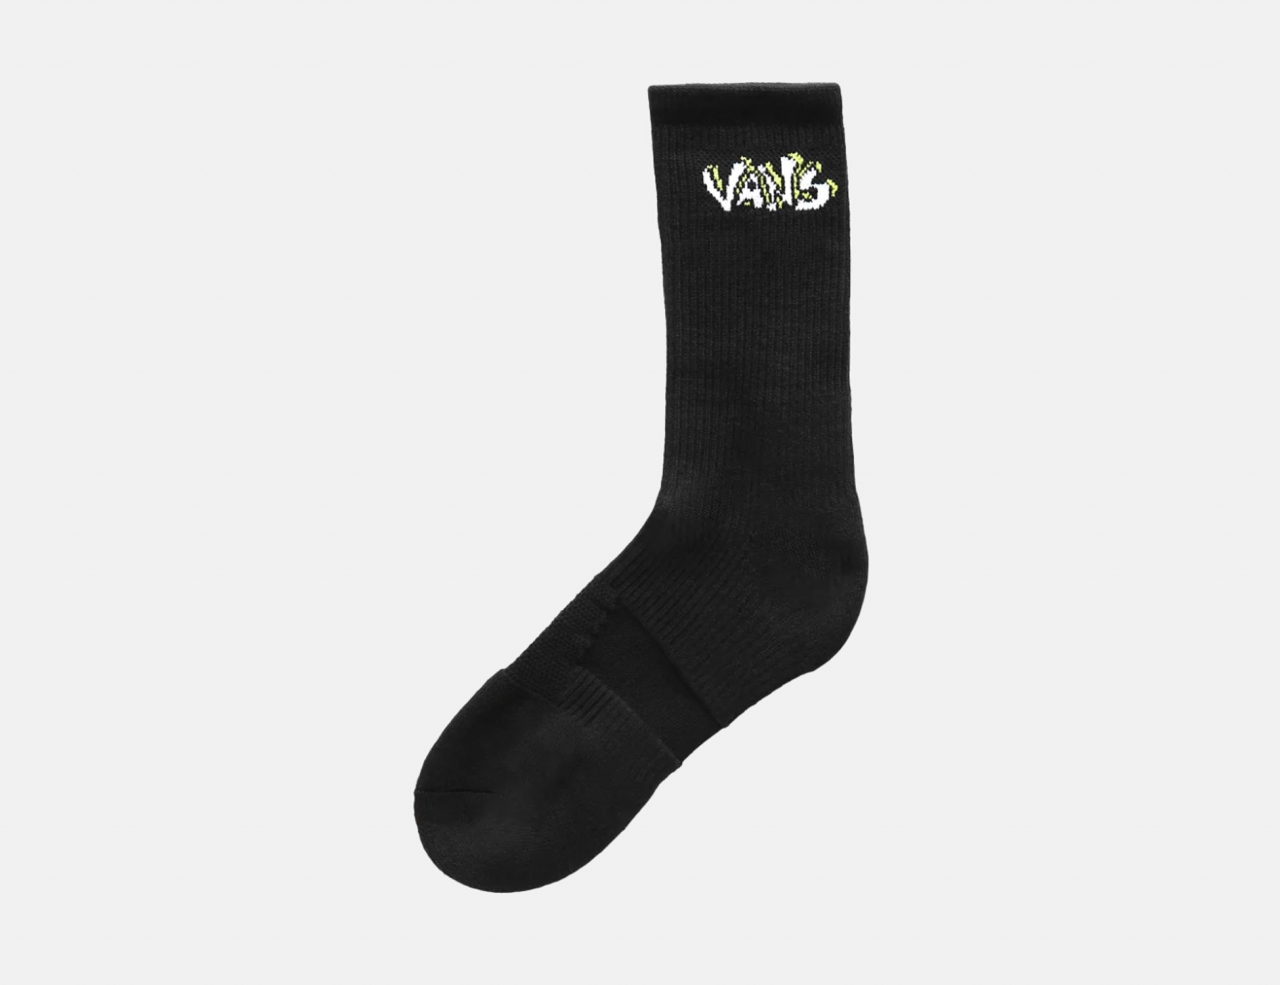 VANS Pro Skate Classic Socks - Black